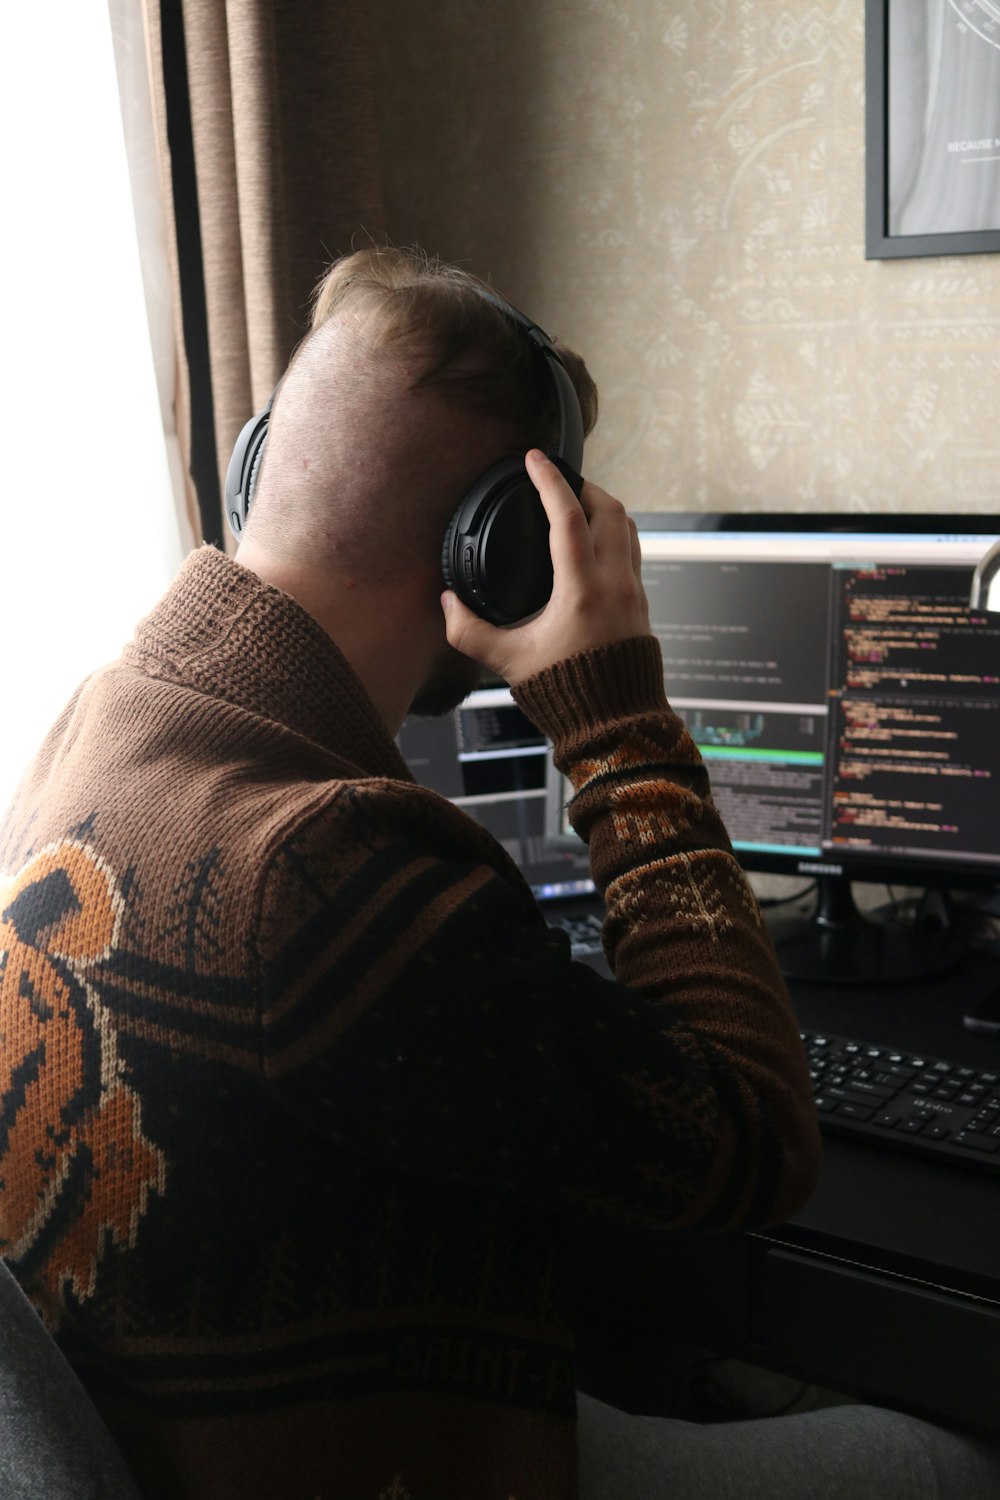 ヘッドフォンをつけたままコンピューターの前に座っている男性